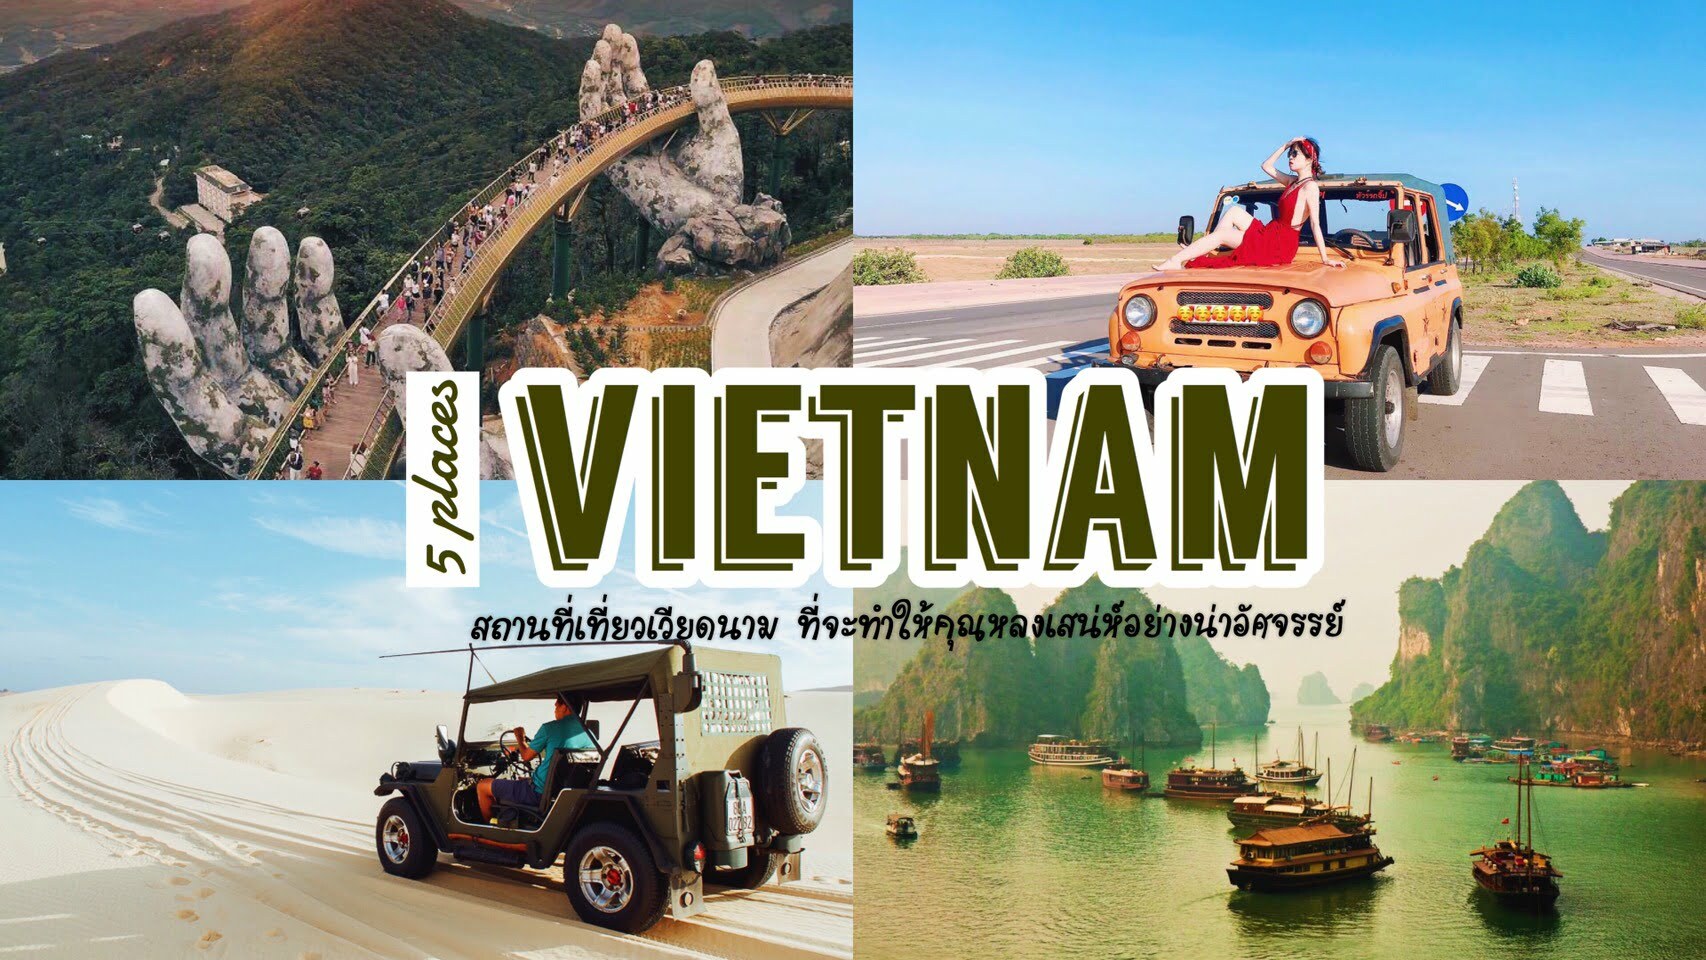 ทัวร์เวียดนาม – เที่ยวเวียดนามกับ 5 สถานที่ ที่จะทำให้คุณหลงมนตร์เสน่ห์อย่างน่ามหัศจรรย์